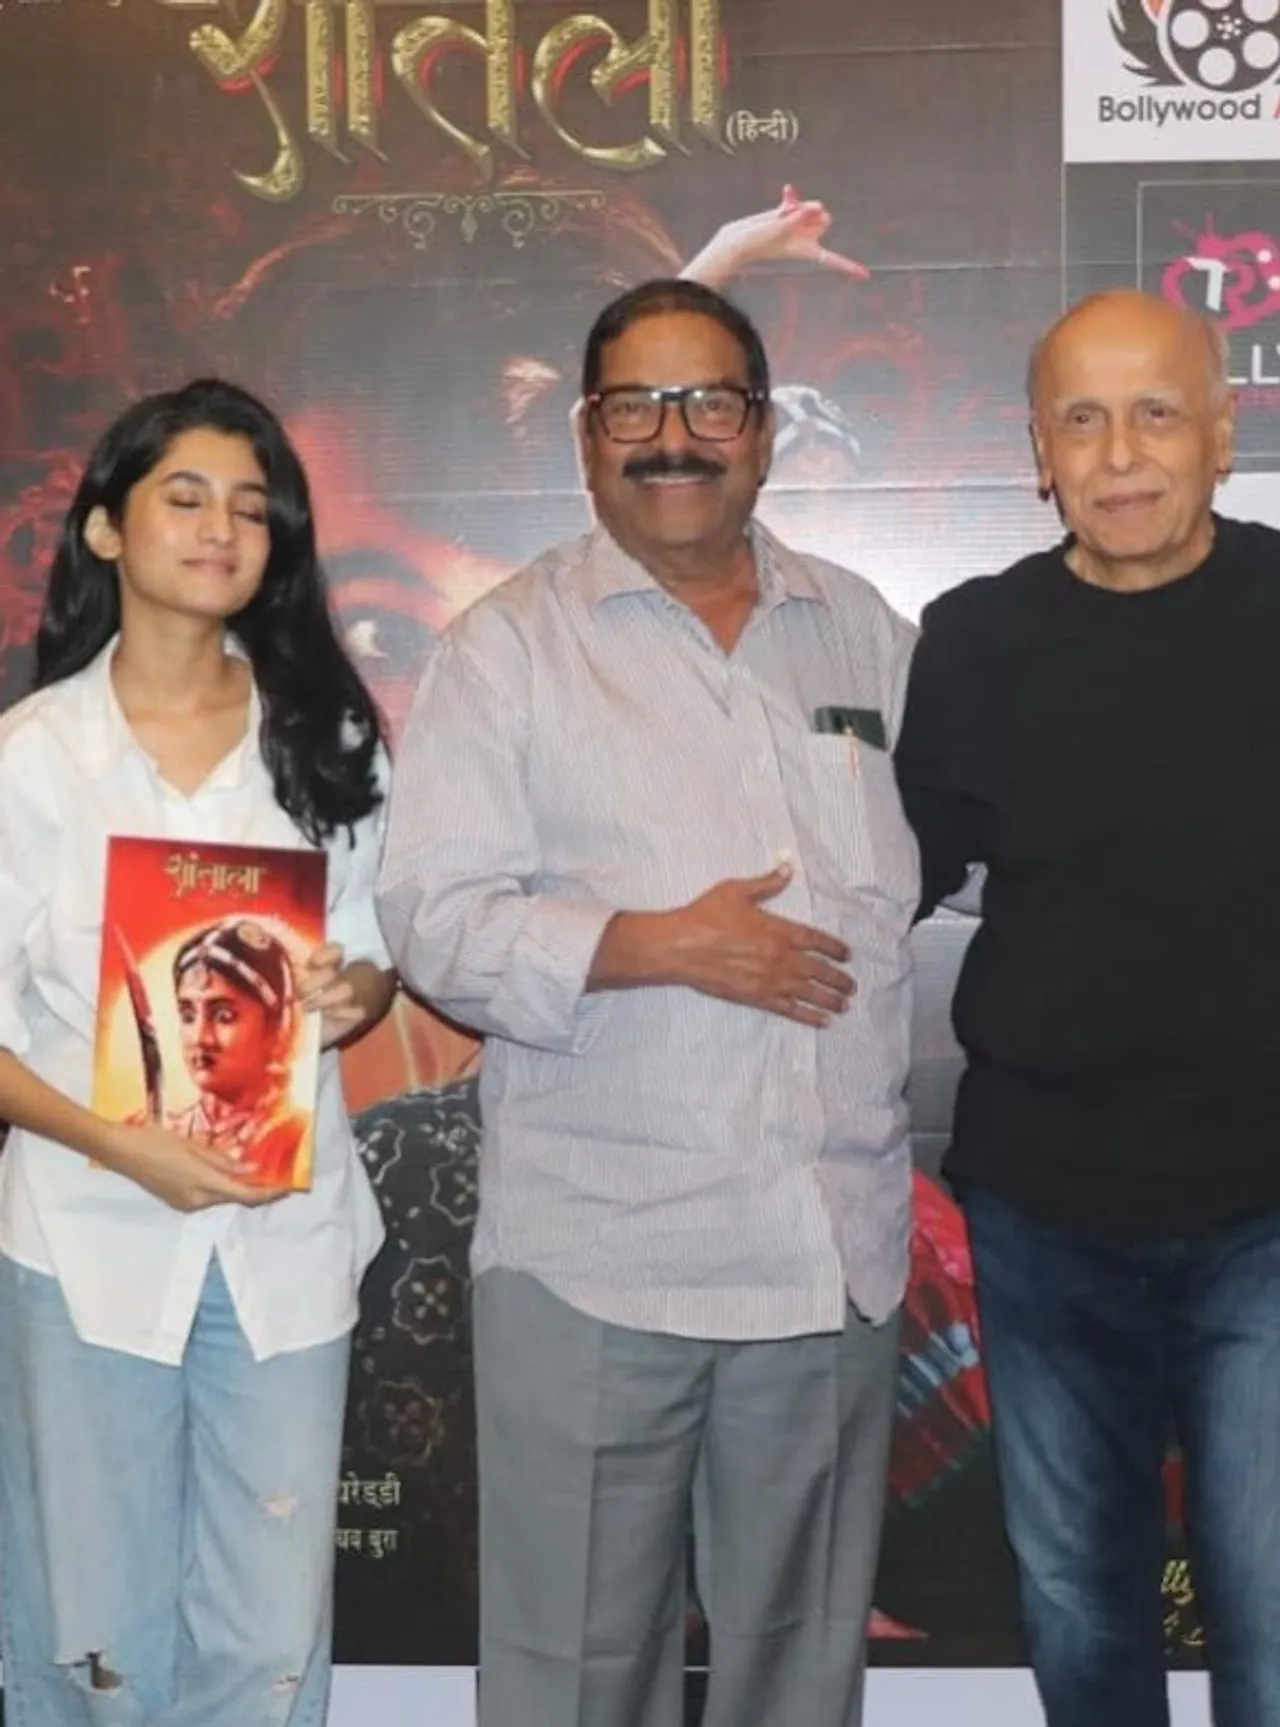 Mahesh Bhatt praised the film